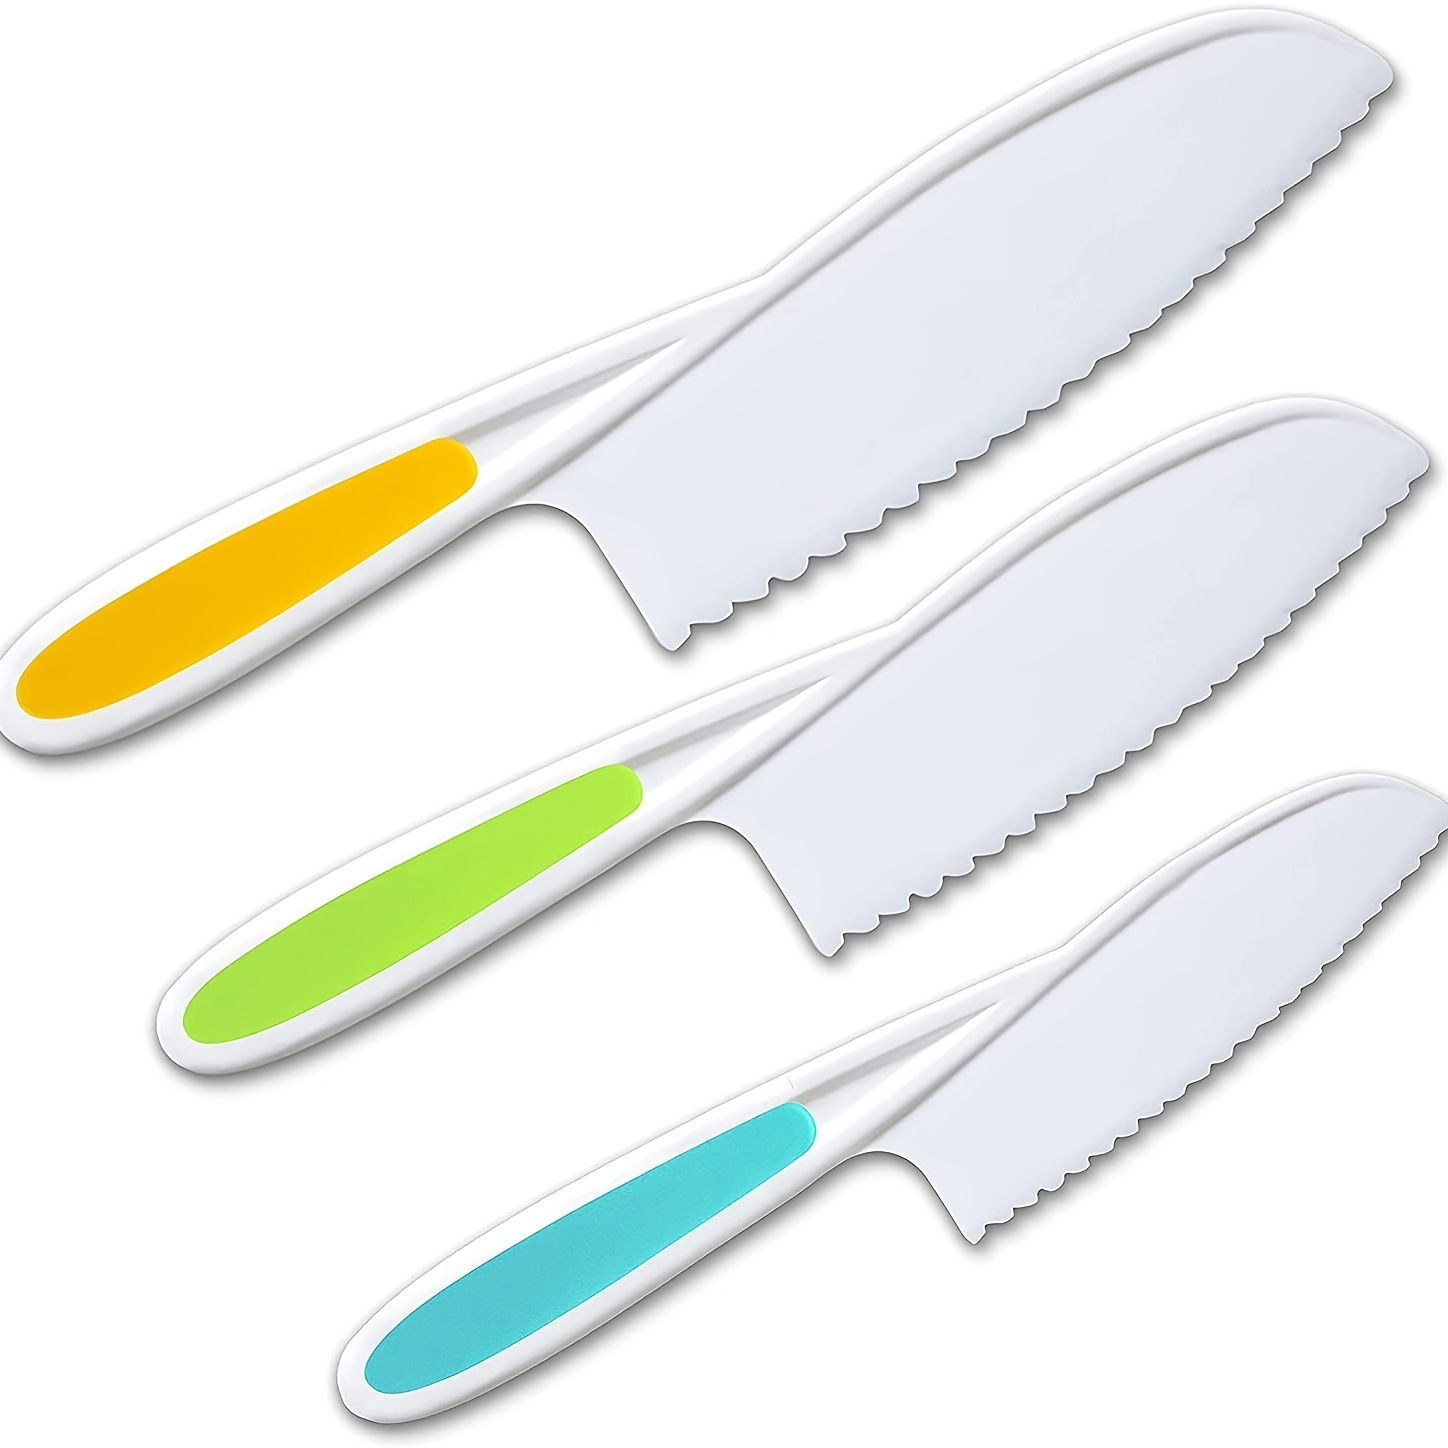 Kids Nylon Knife Set - For Small Hands